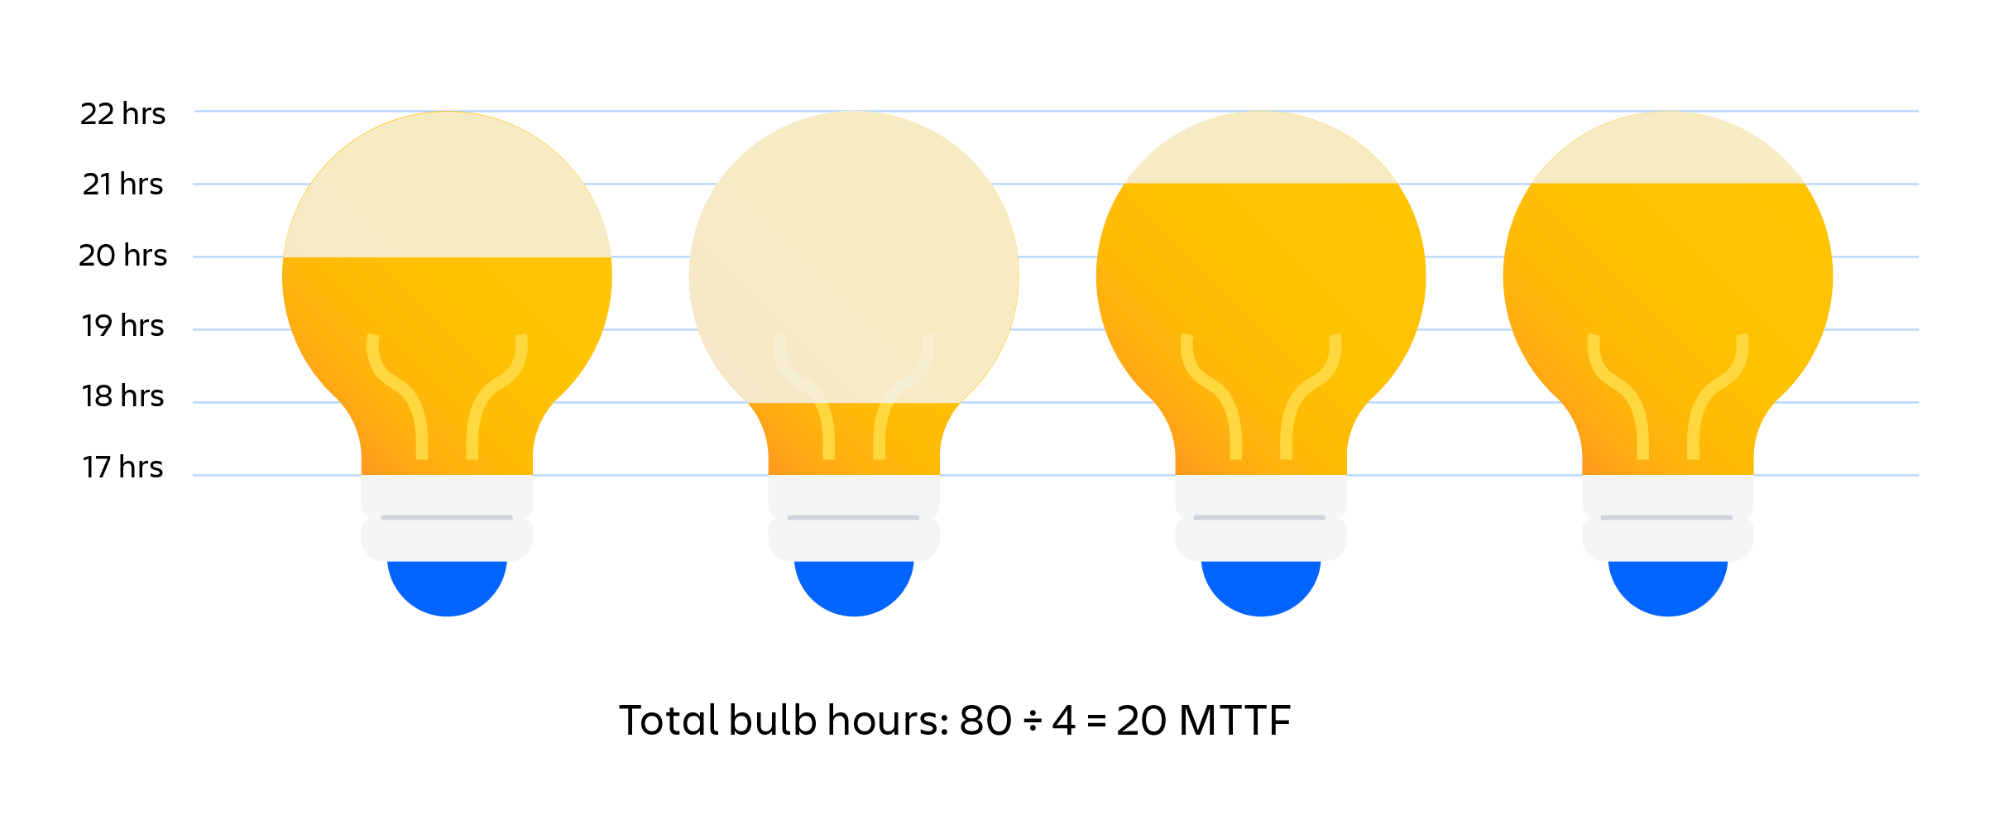 Visuelles Beispiel für die Ermittlung der MTTF von Glühbirnen. Gesamte Leuchtdauer der Glühbirne geteilt durch die Anzahl der Glühbirnen entspricht der MTTF (Betriebsdauer bis zum Ausfall).